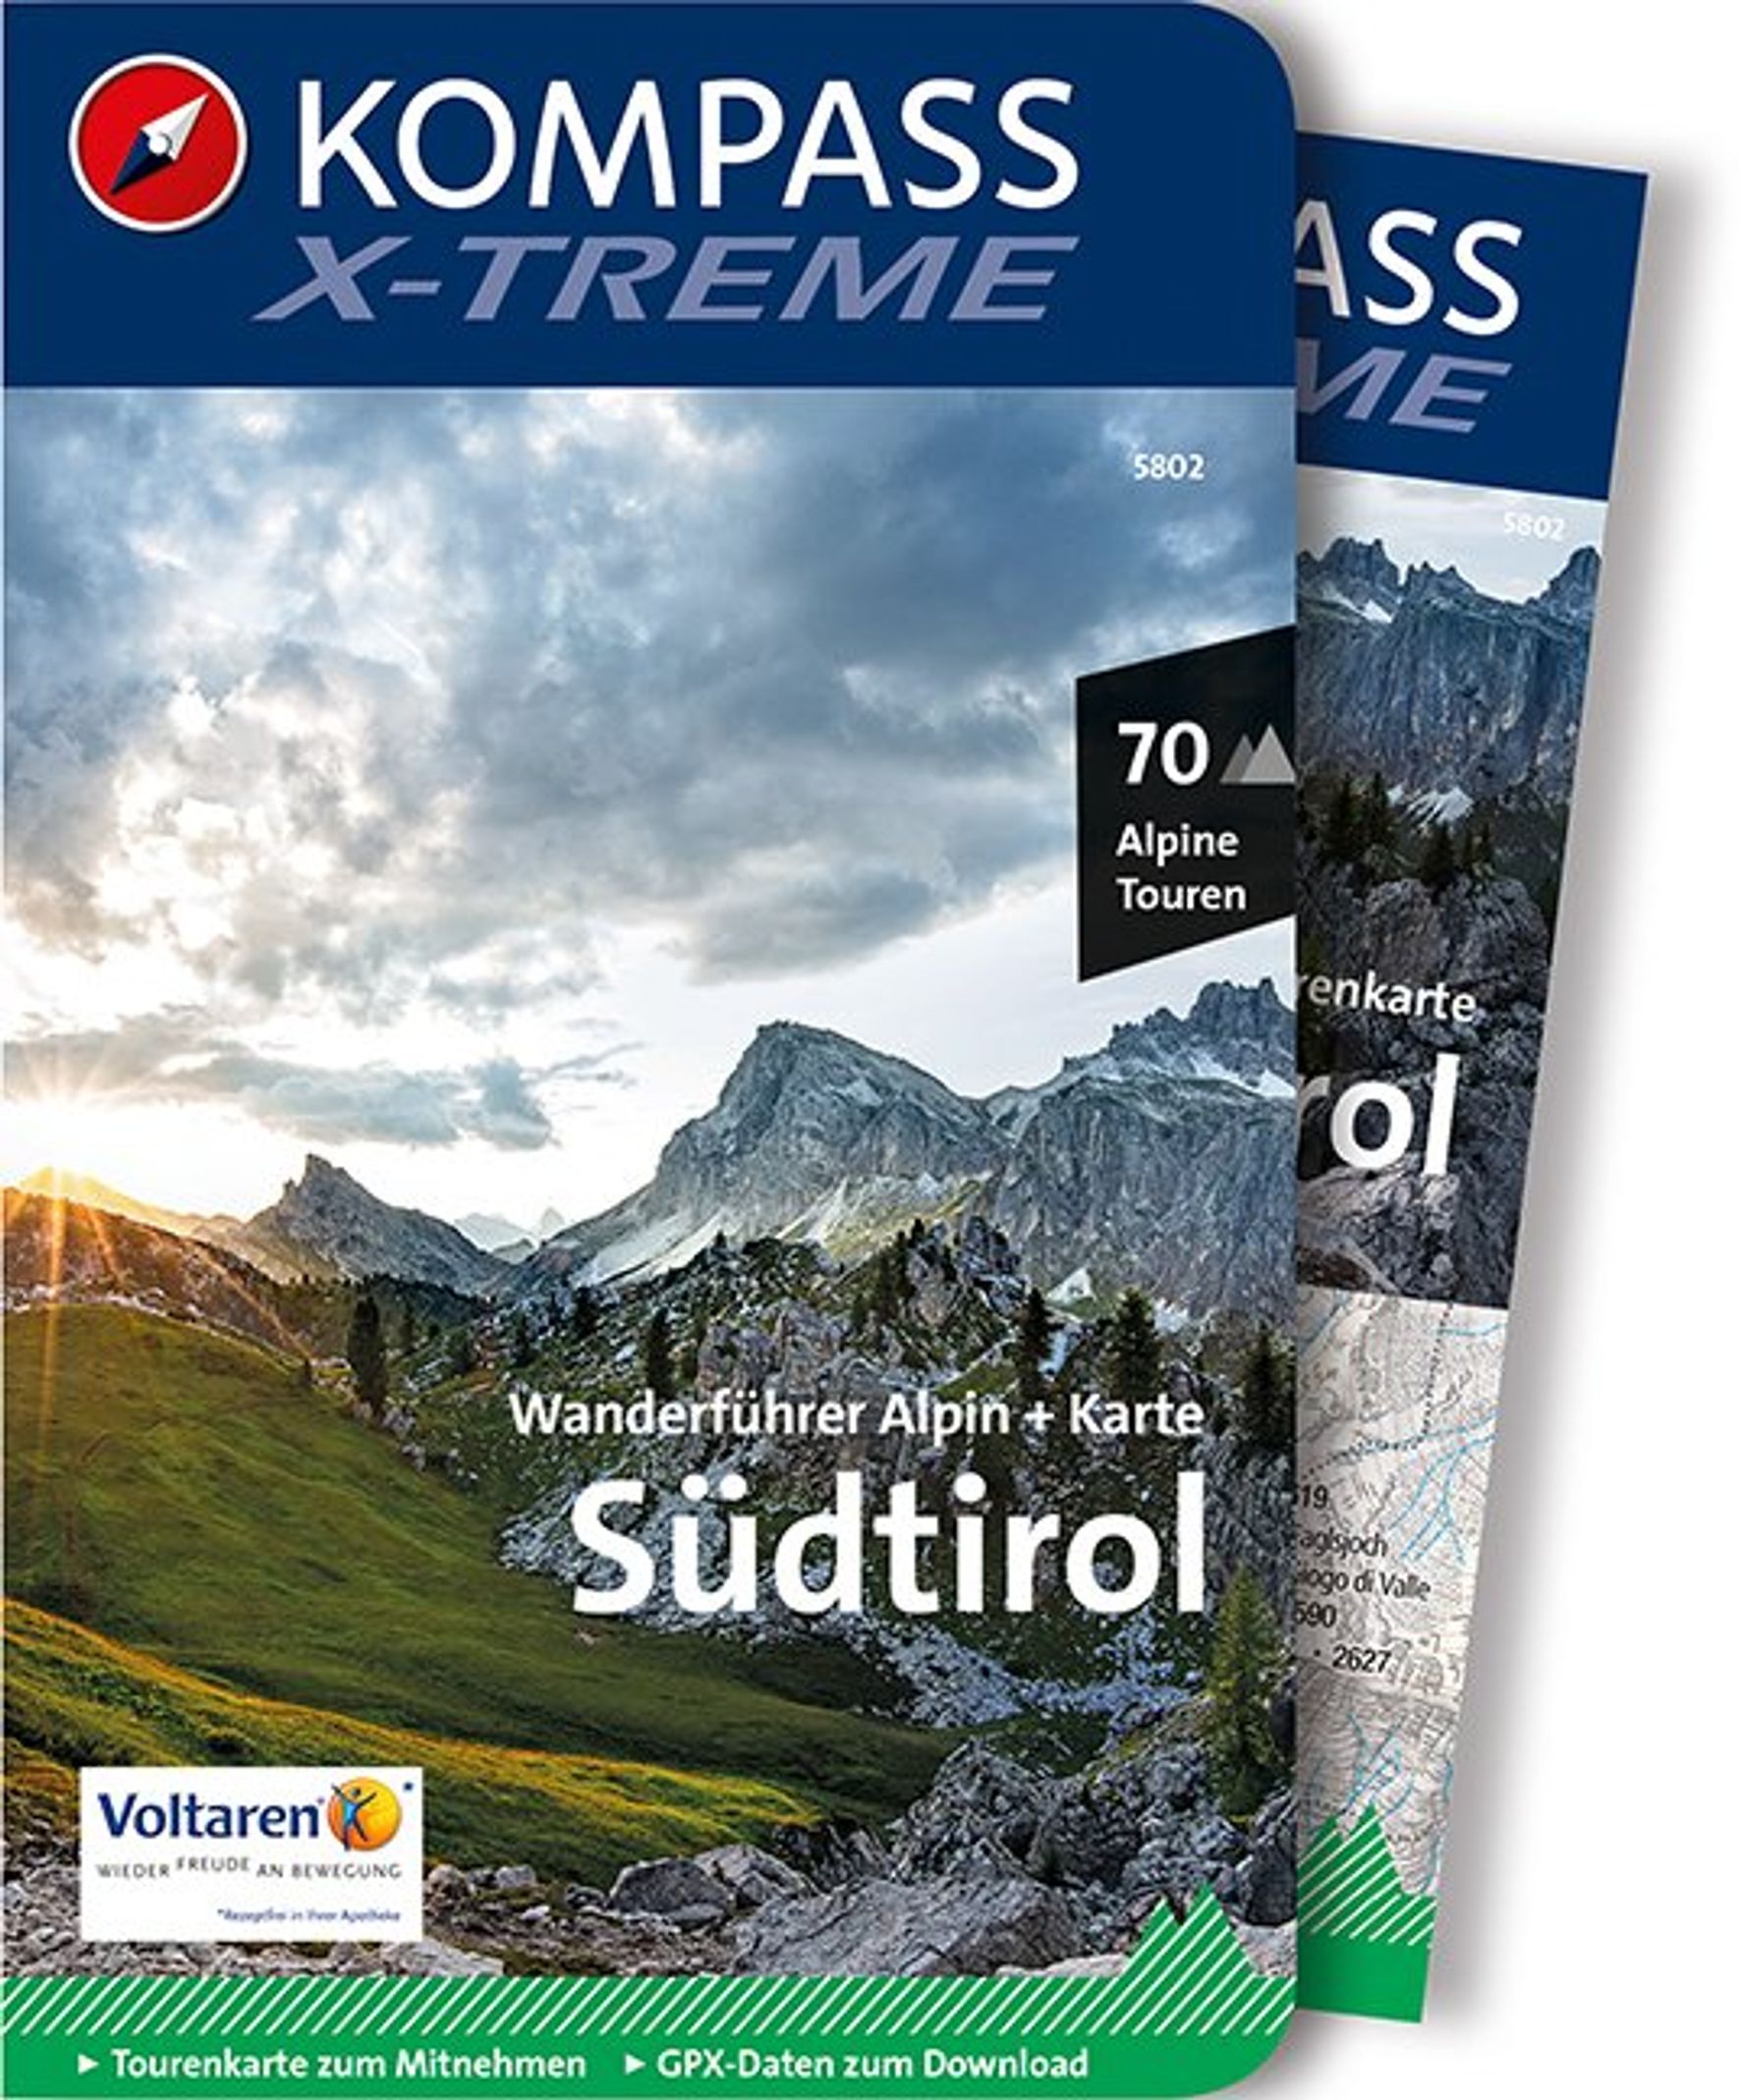 MAIRDUMONT X-treme Südtirol, 70 Alpine Touren